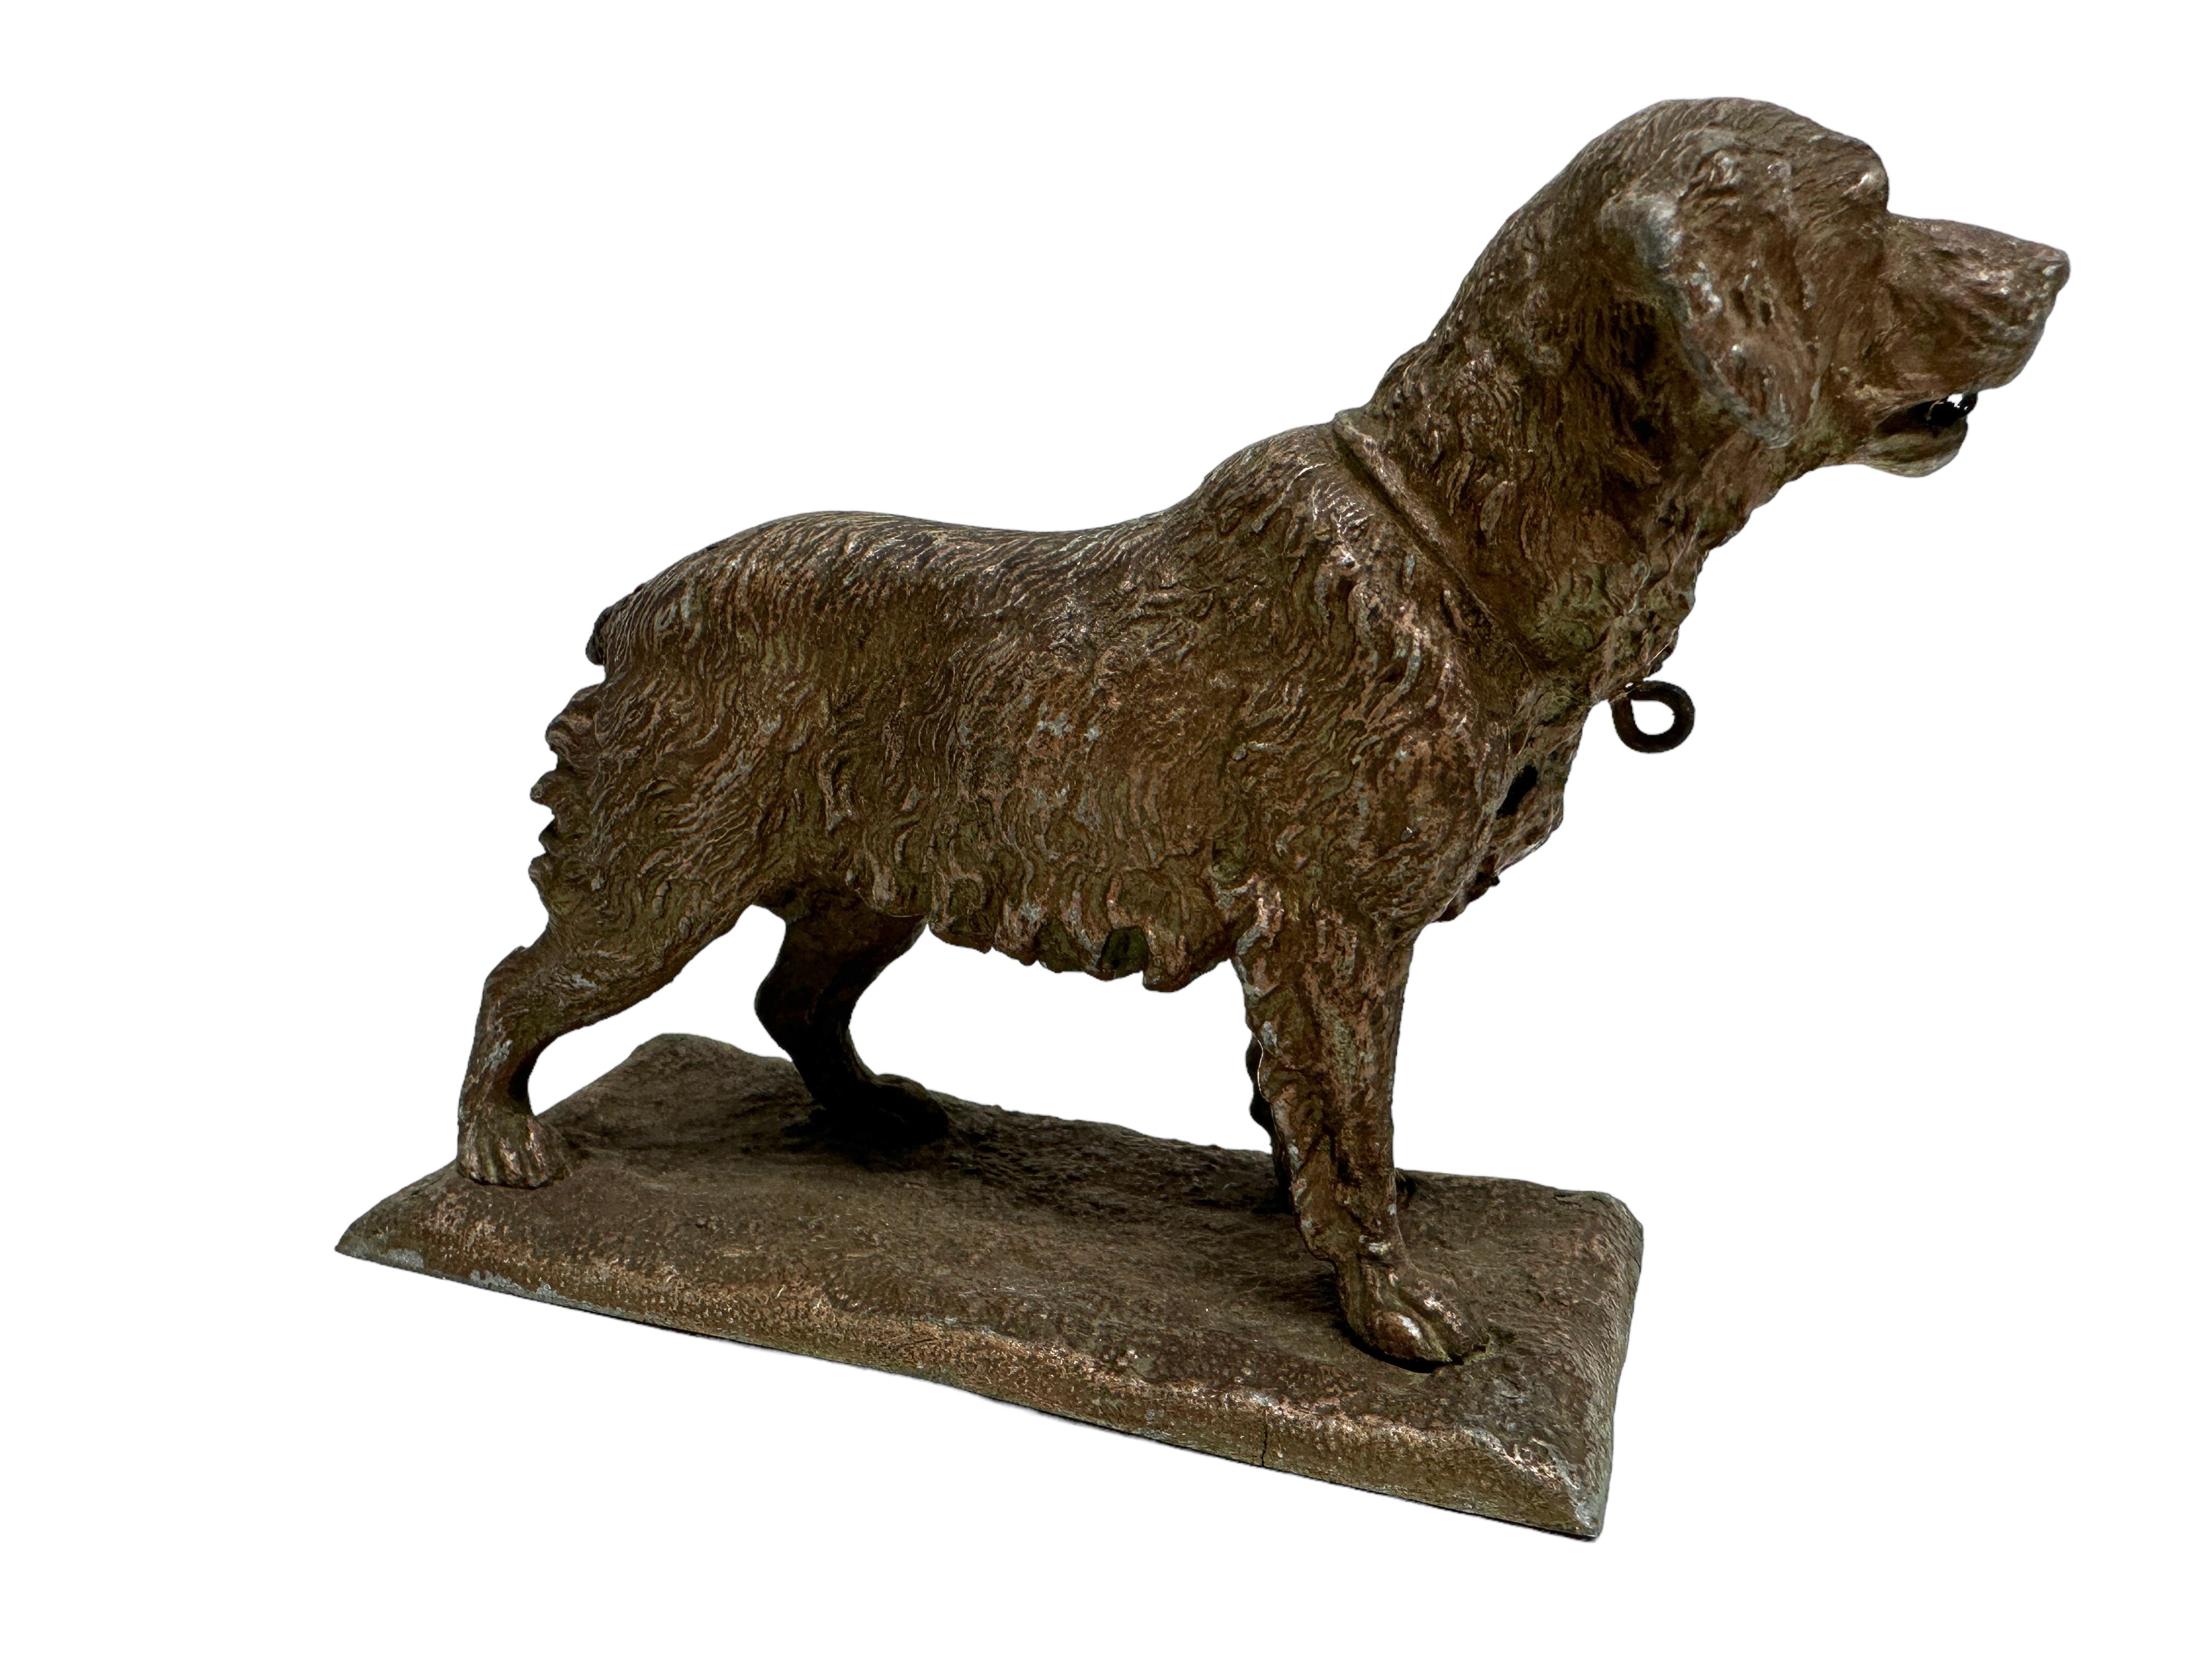 Une ancienne figurine décorative de chien. En métal. Un bel objet antique original à exposer ou à utiliser sur votre table. Il est dans l'état d'origine tel qu'il a été trouvé. Cette pièce présente une belle patine et est en très bon état.